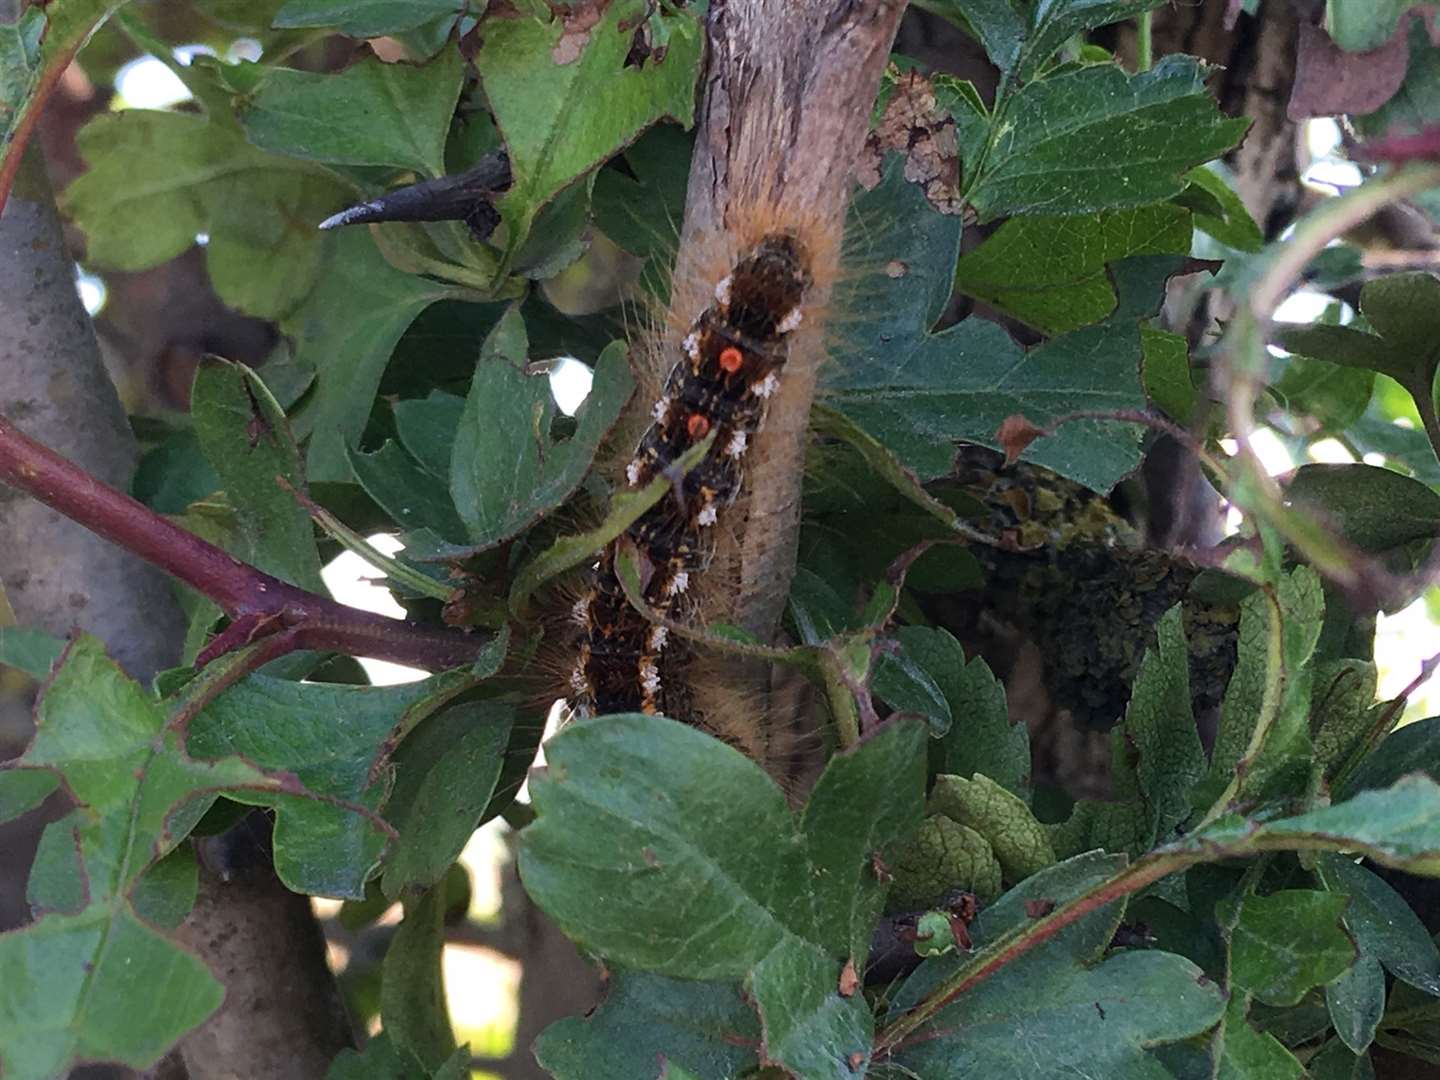 Another caterpillar